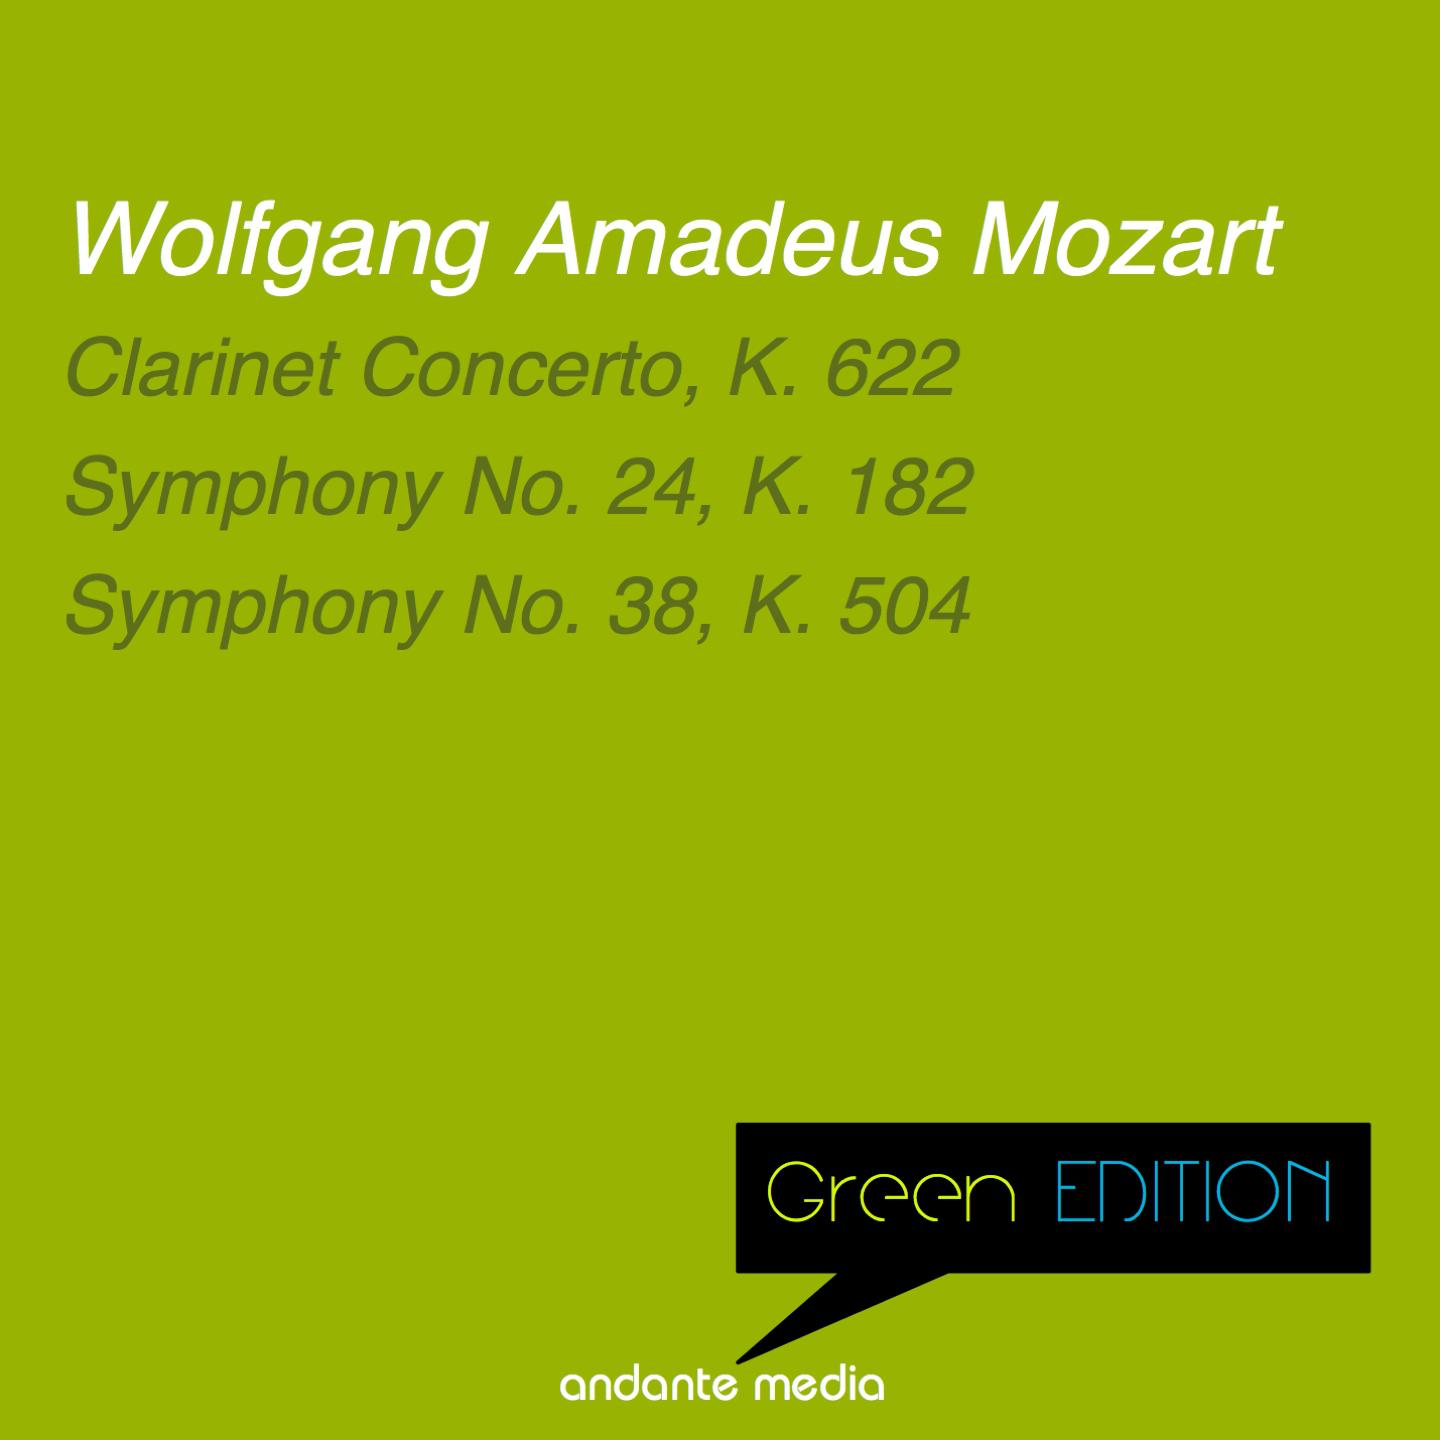 Green Edition - Mozart: Clarinet Concerto, K. 622 & Symphonies Nos. 24 & 38